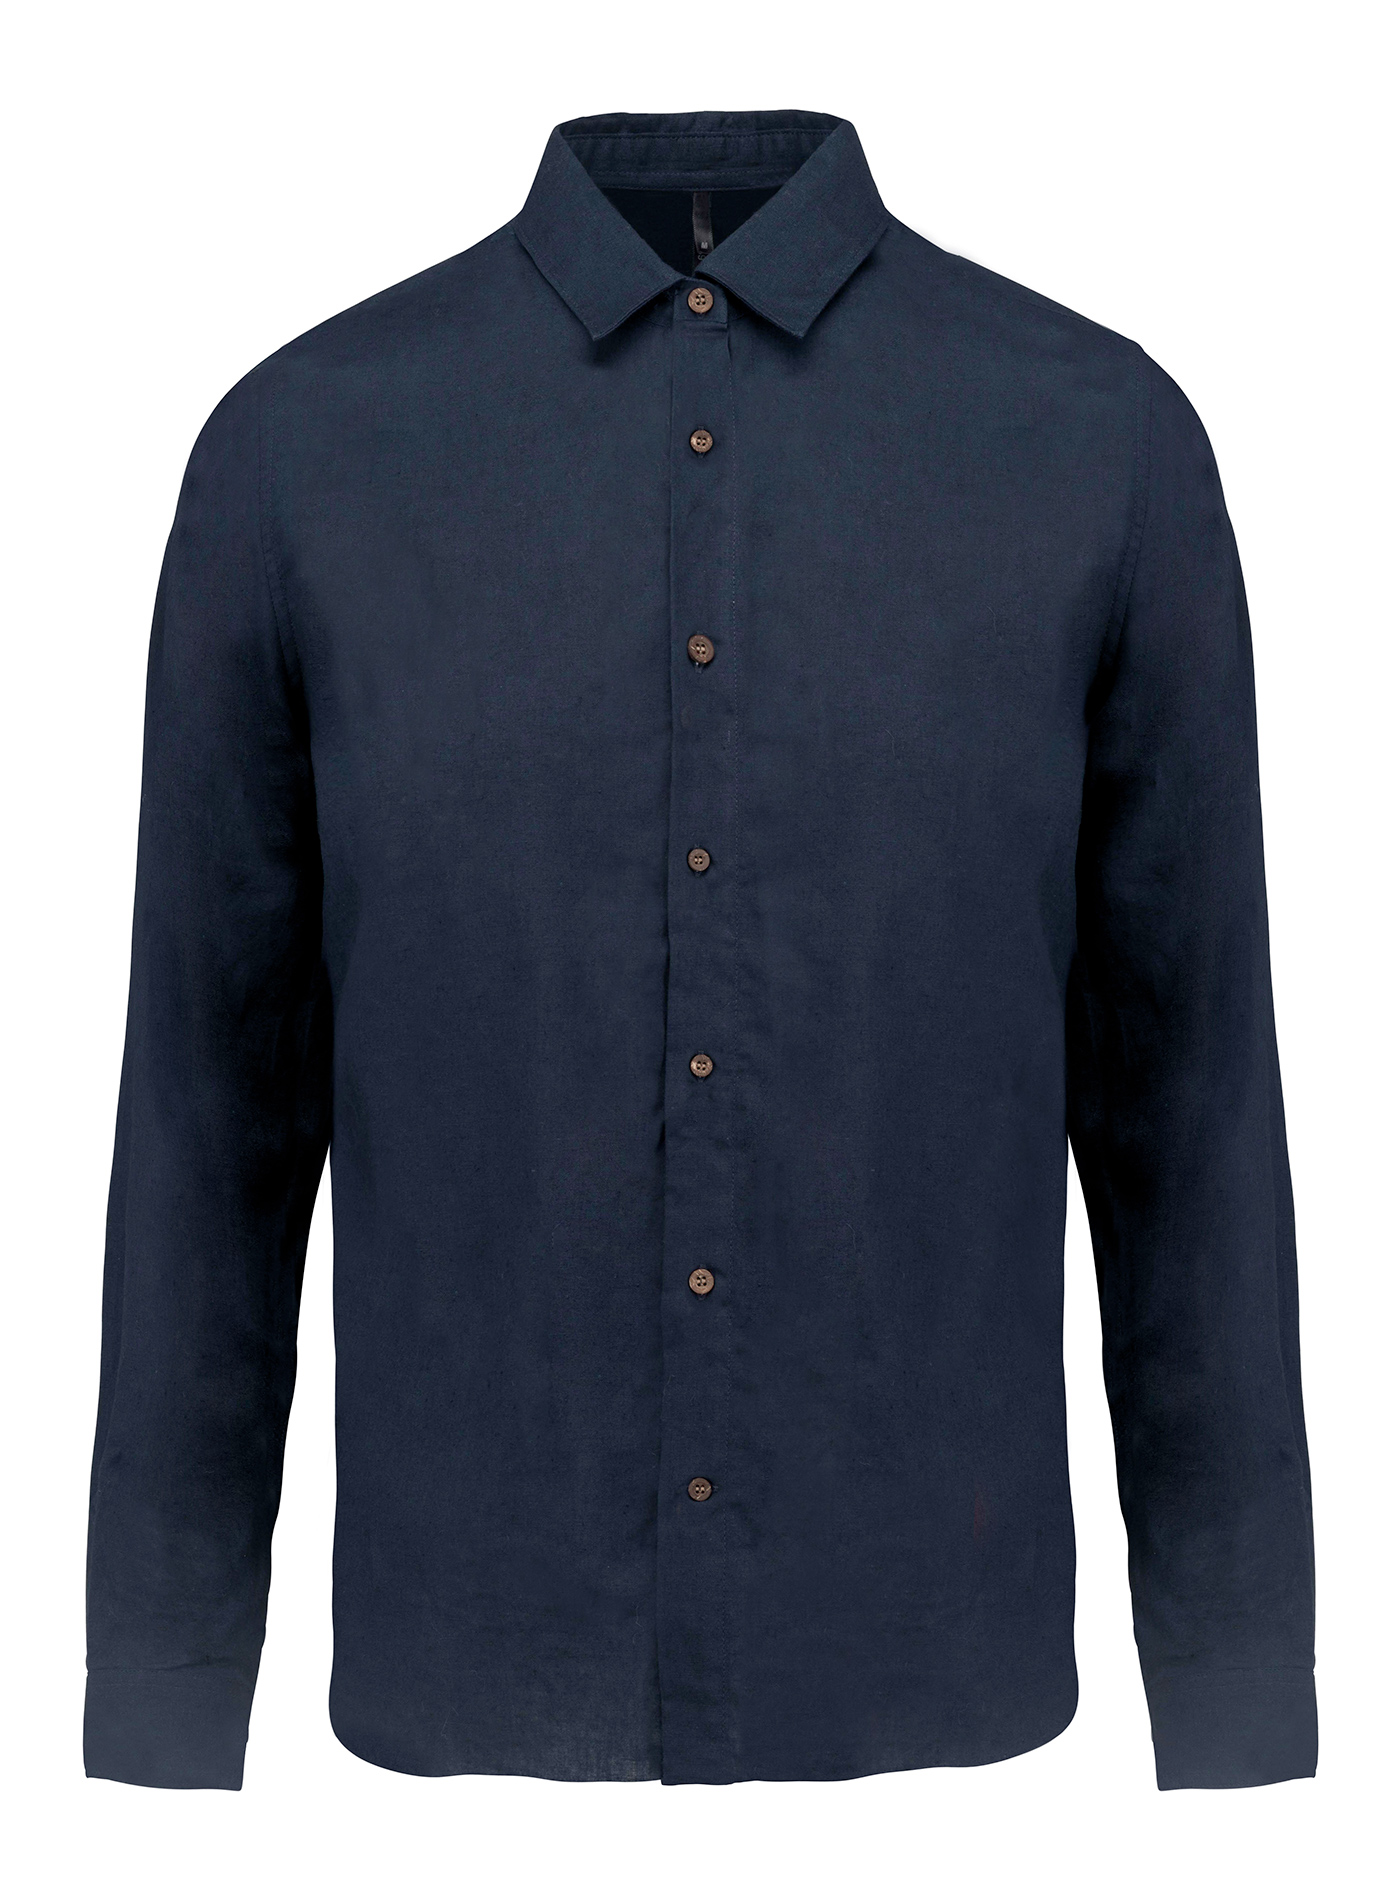 Pánská lněná košile - Cobalt blue/Navy M